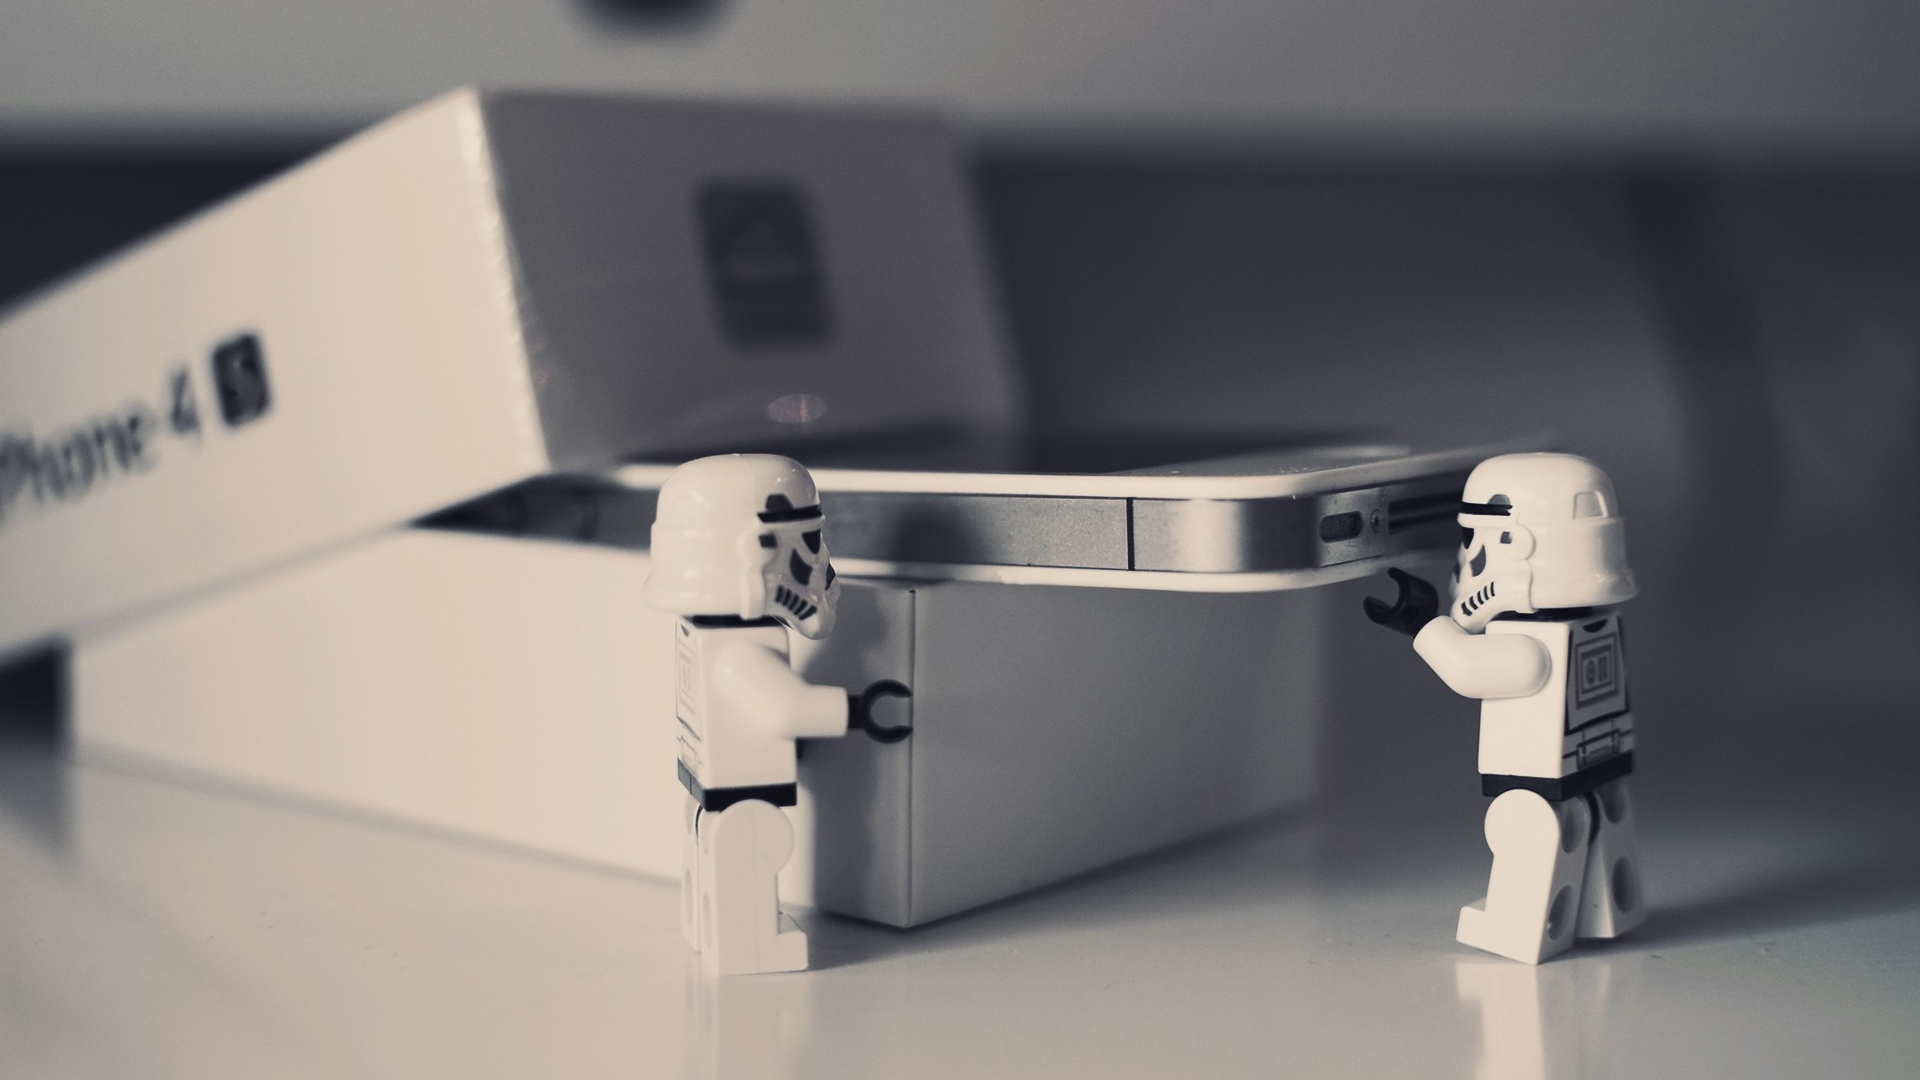 Hd Hintergrundbilder Box Lego Star Wars Handy - 1080p Abstract Desktop Backgrounds - HD Wallpaper 